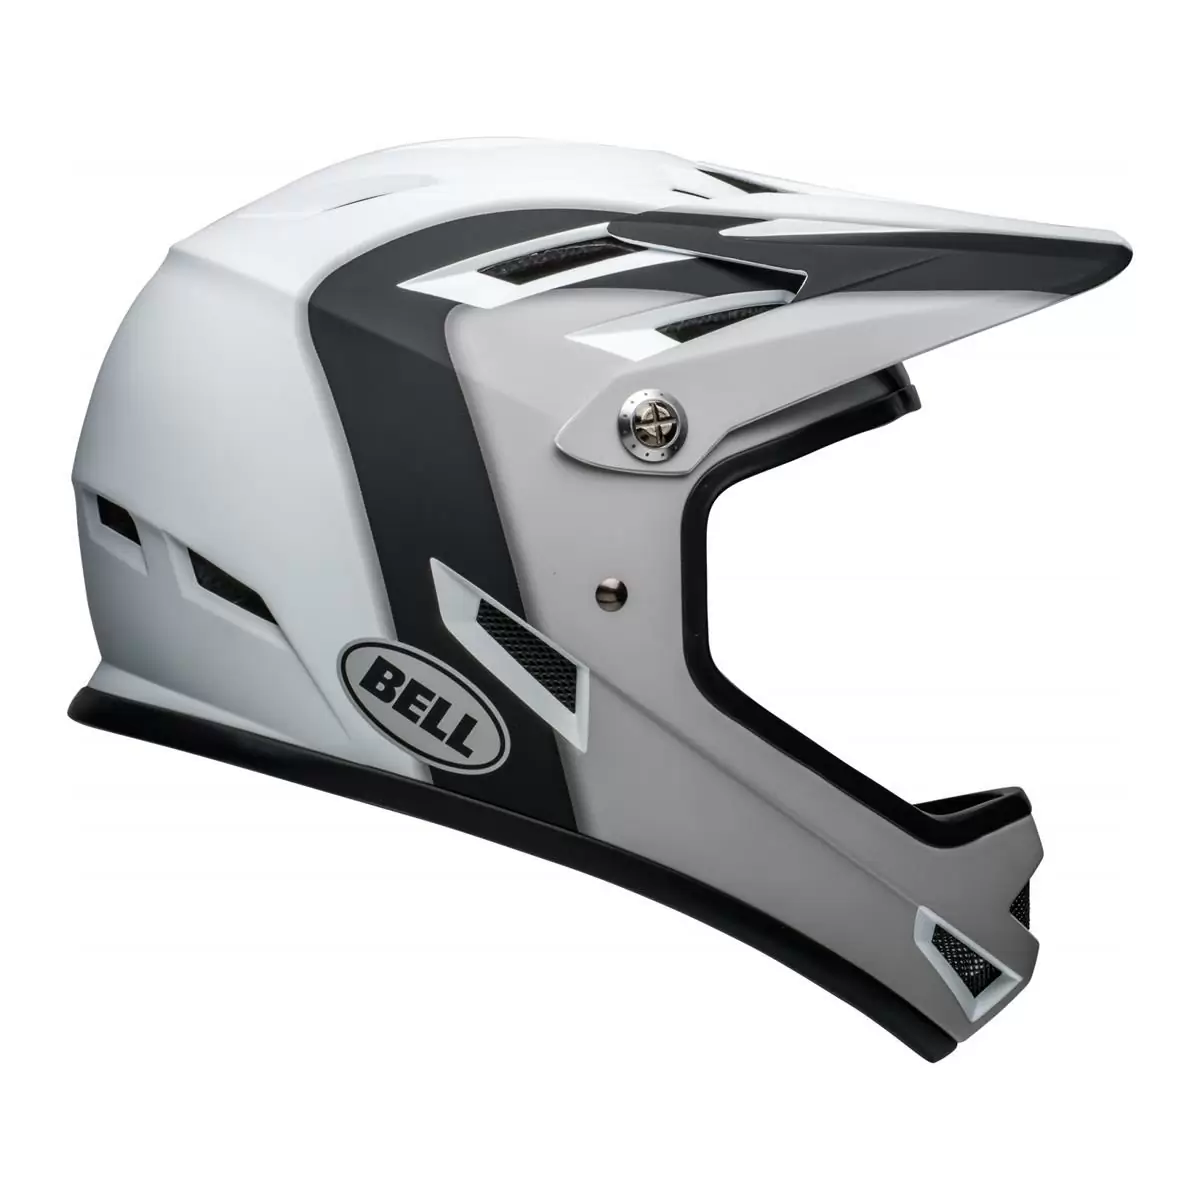 Sanction Full Face Helmet Black/White Size XS (48-51cm) #3